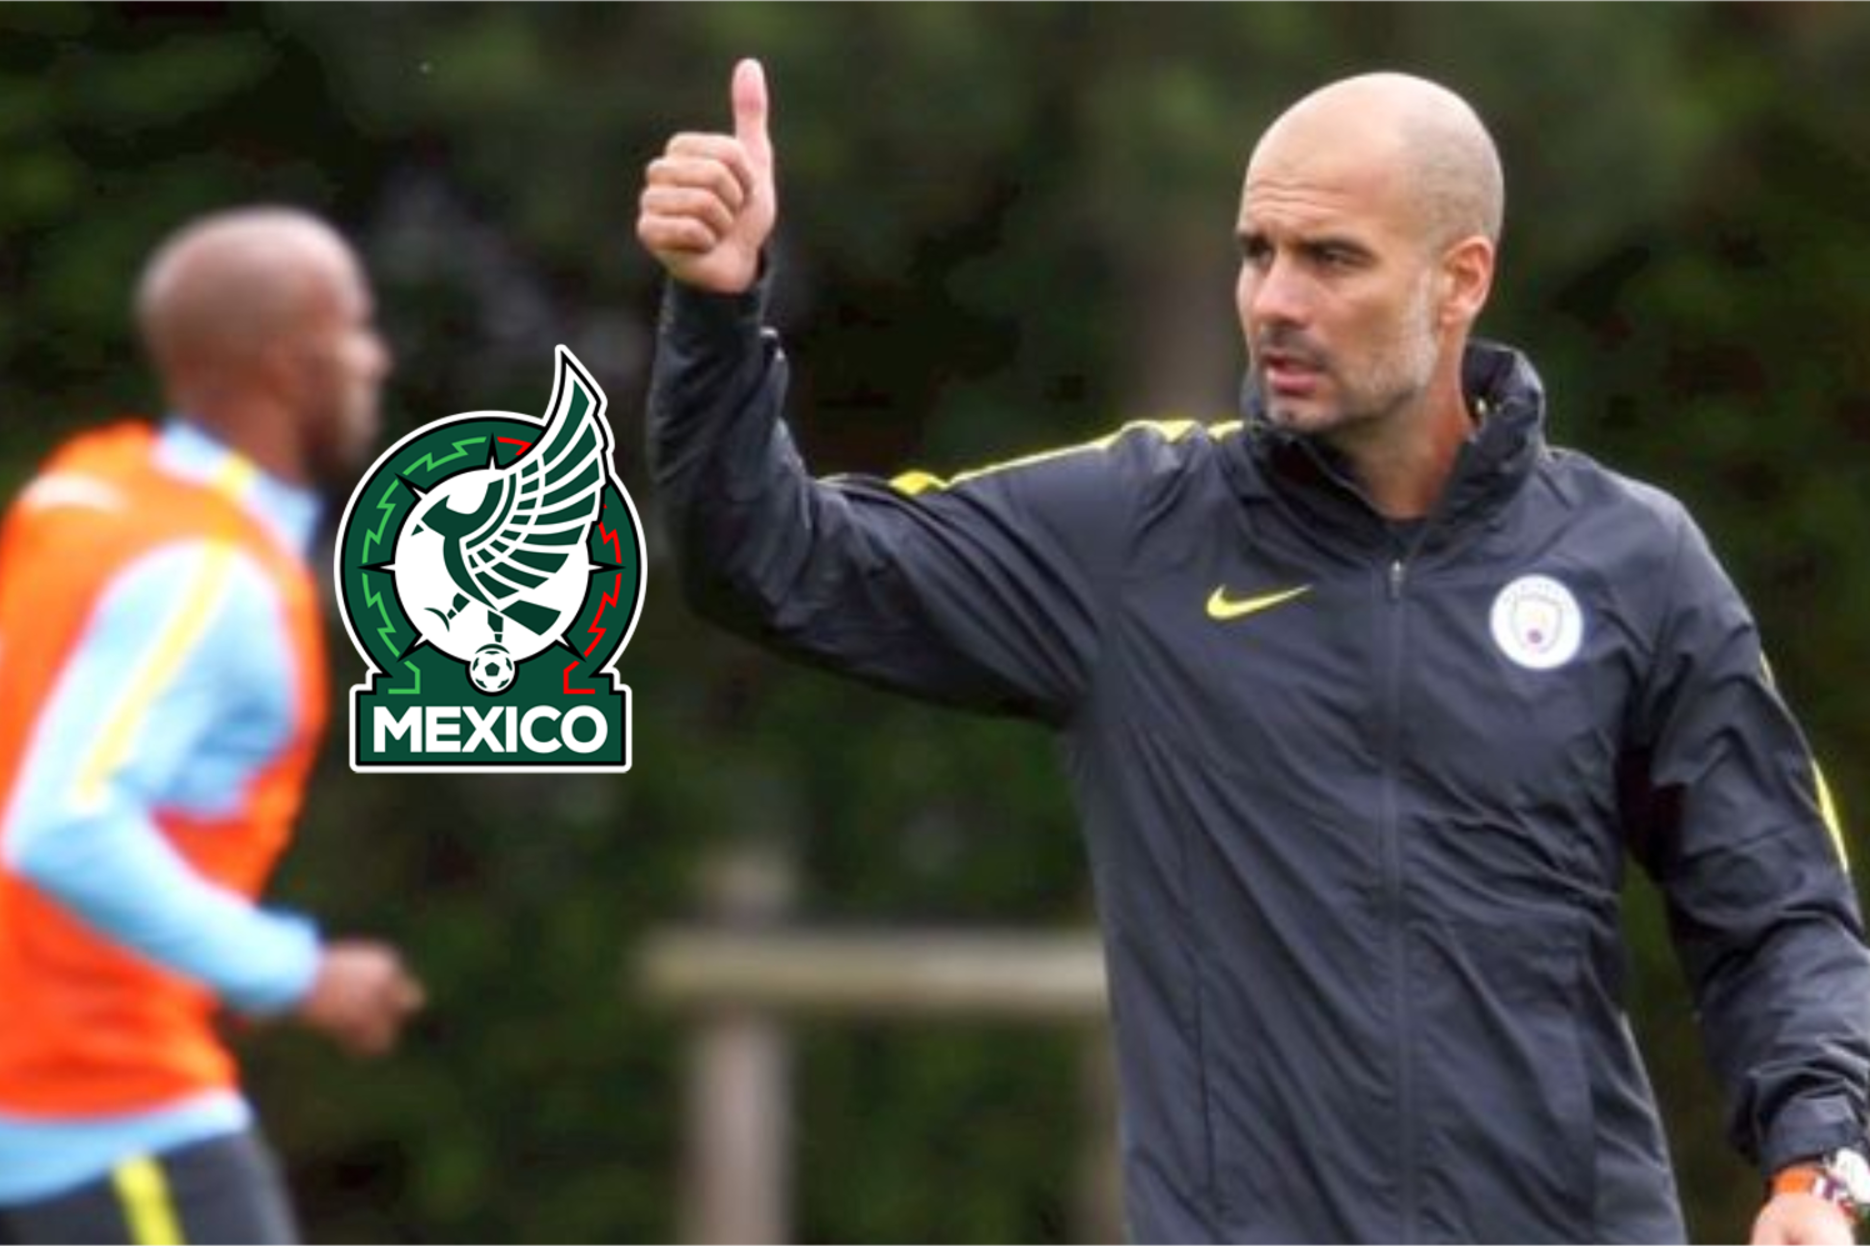 El mexicano llegó al Manchester City y ya entrenó con el 1er equipo